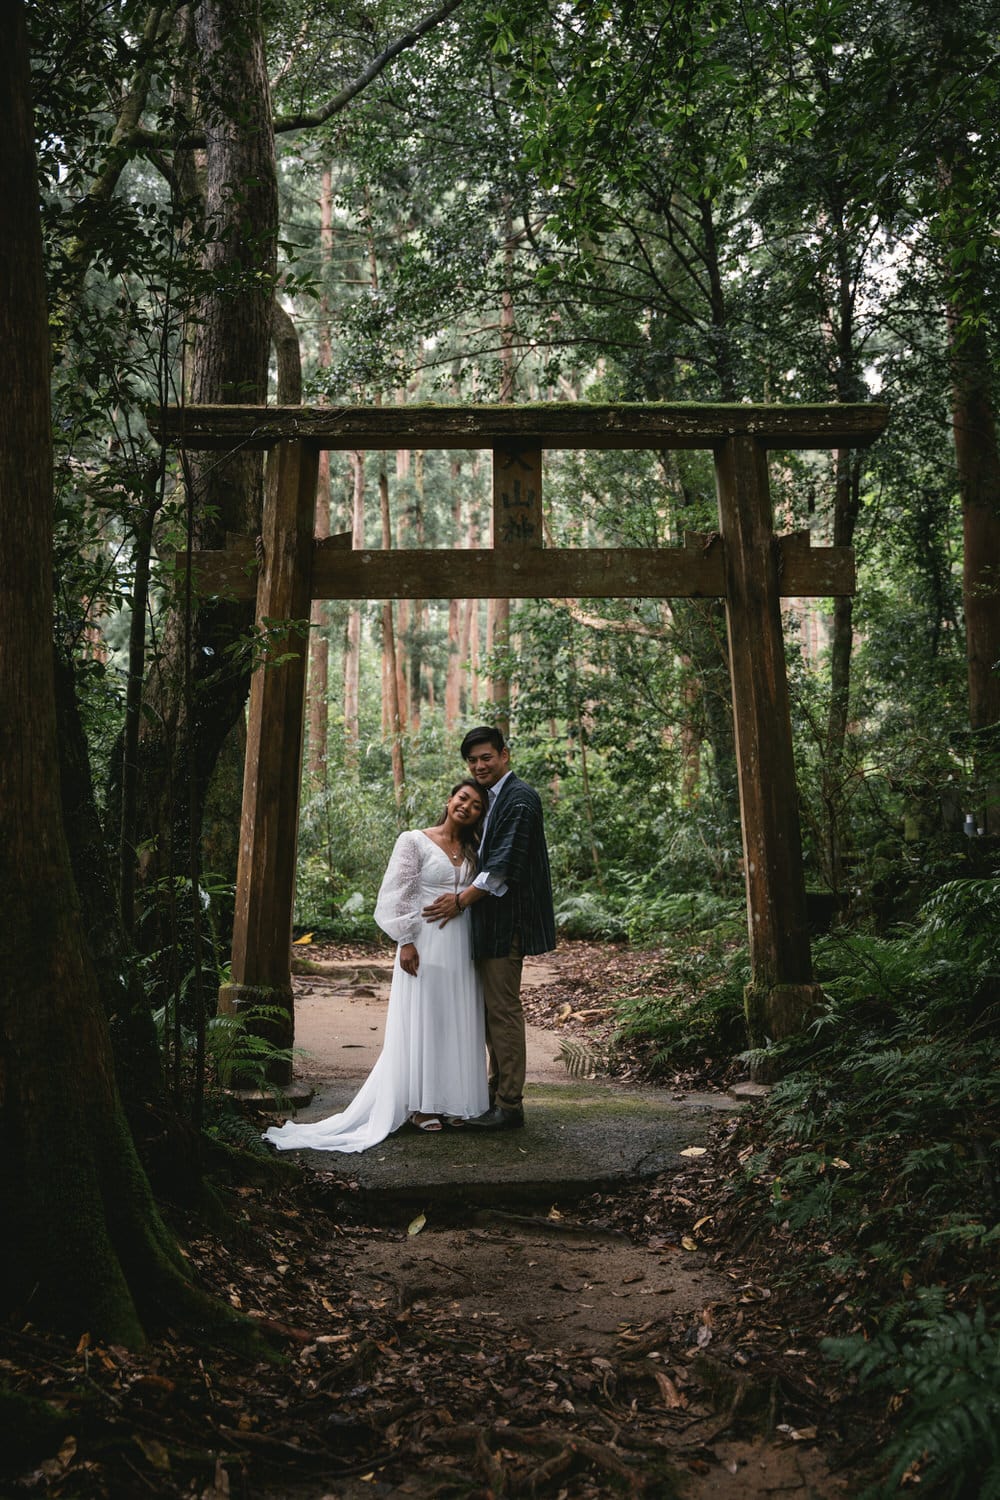 Wedding on Yakushima - couple photos by a Torii gate